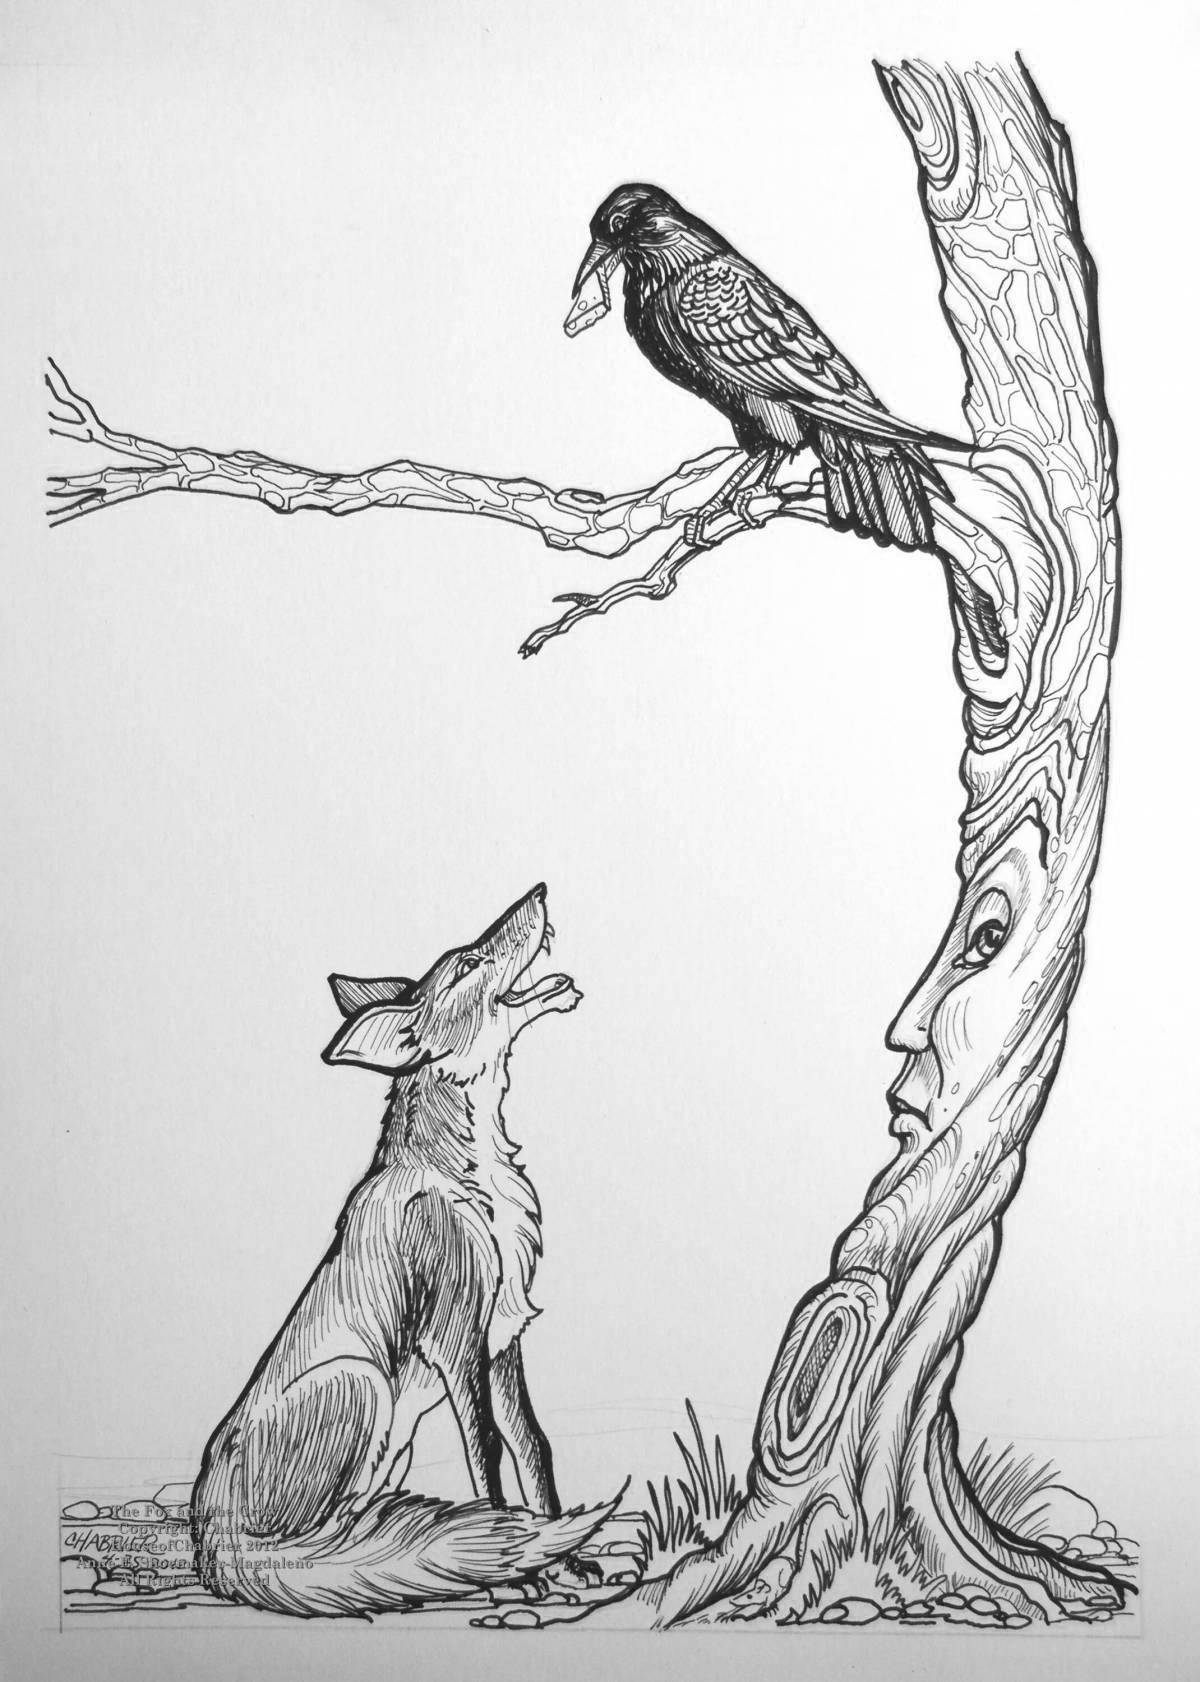 Иллюстрация к басне Крылова ворона и лисица